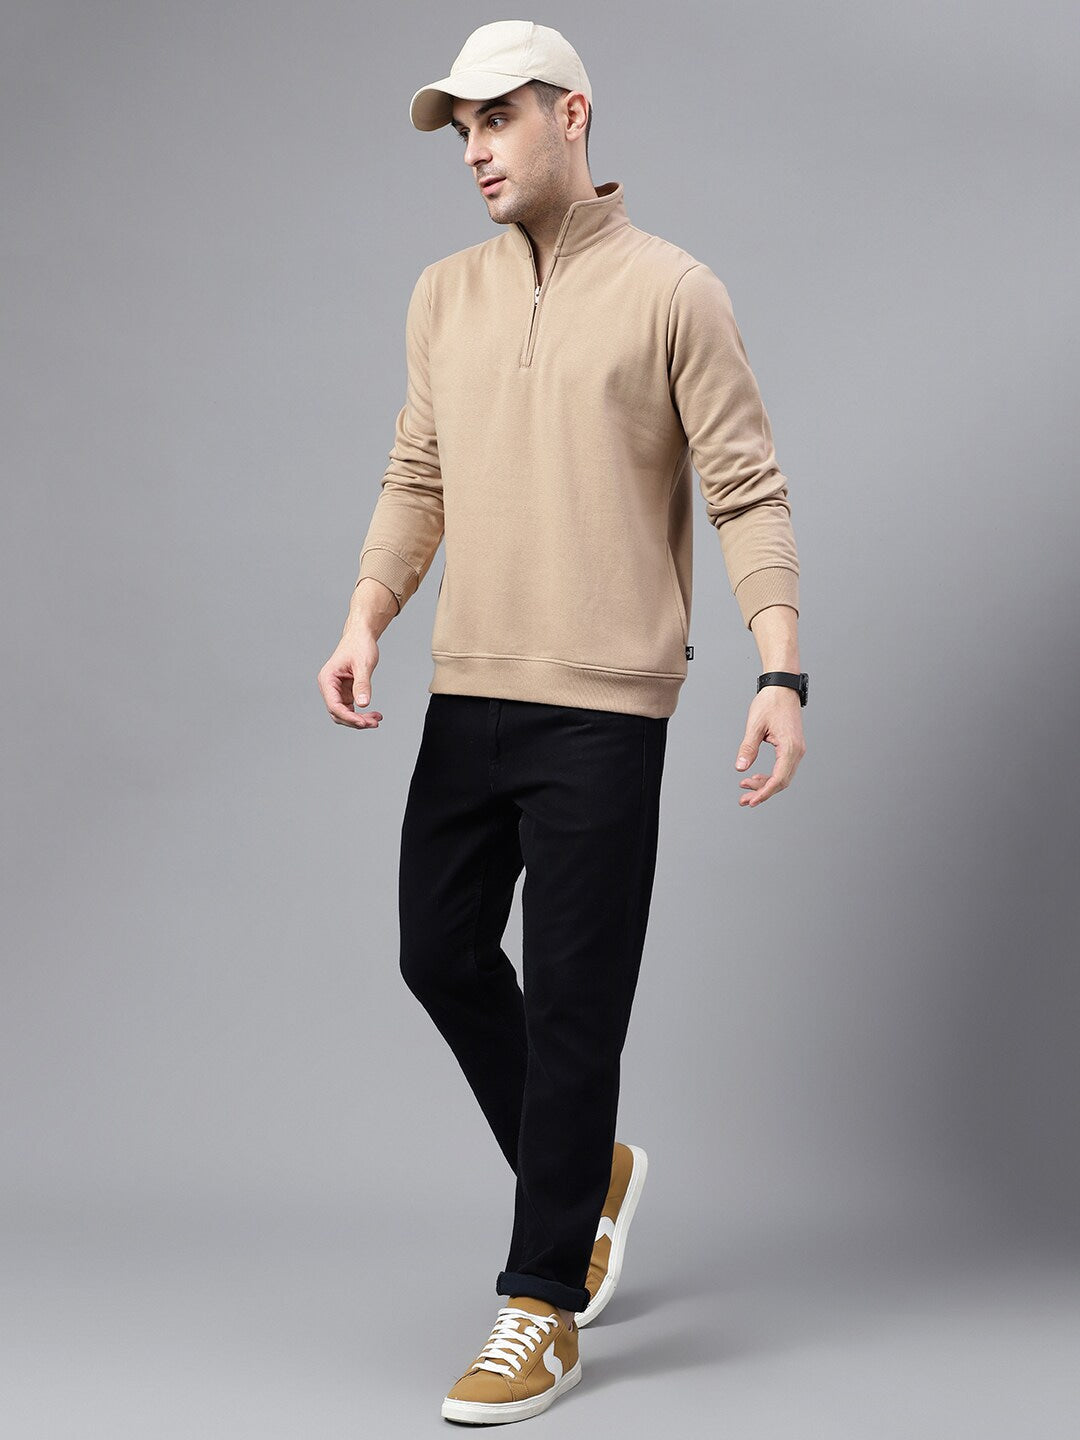 Men Beige Solid Half Zipper Long Sleeves Fleece Sweatshirt